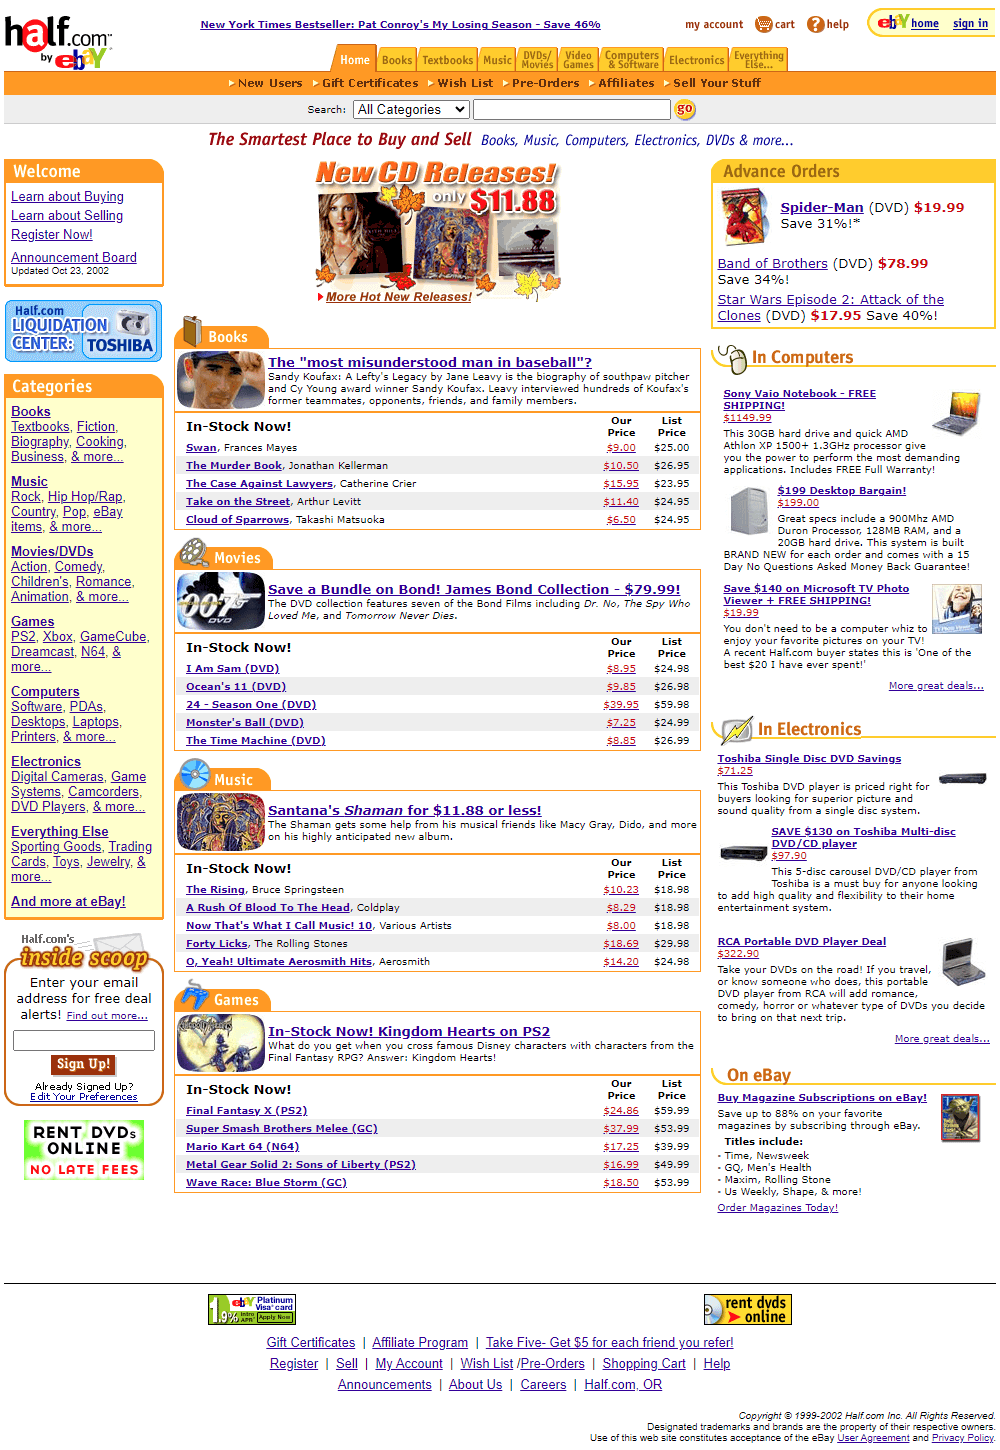 Half.com website in 2002